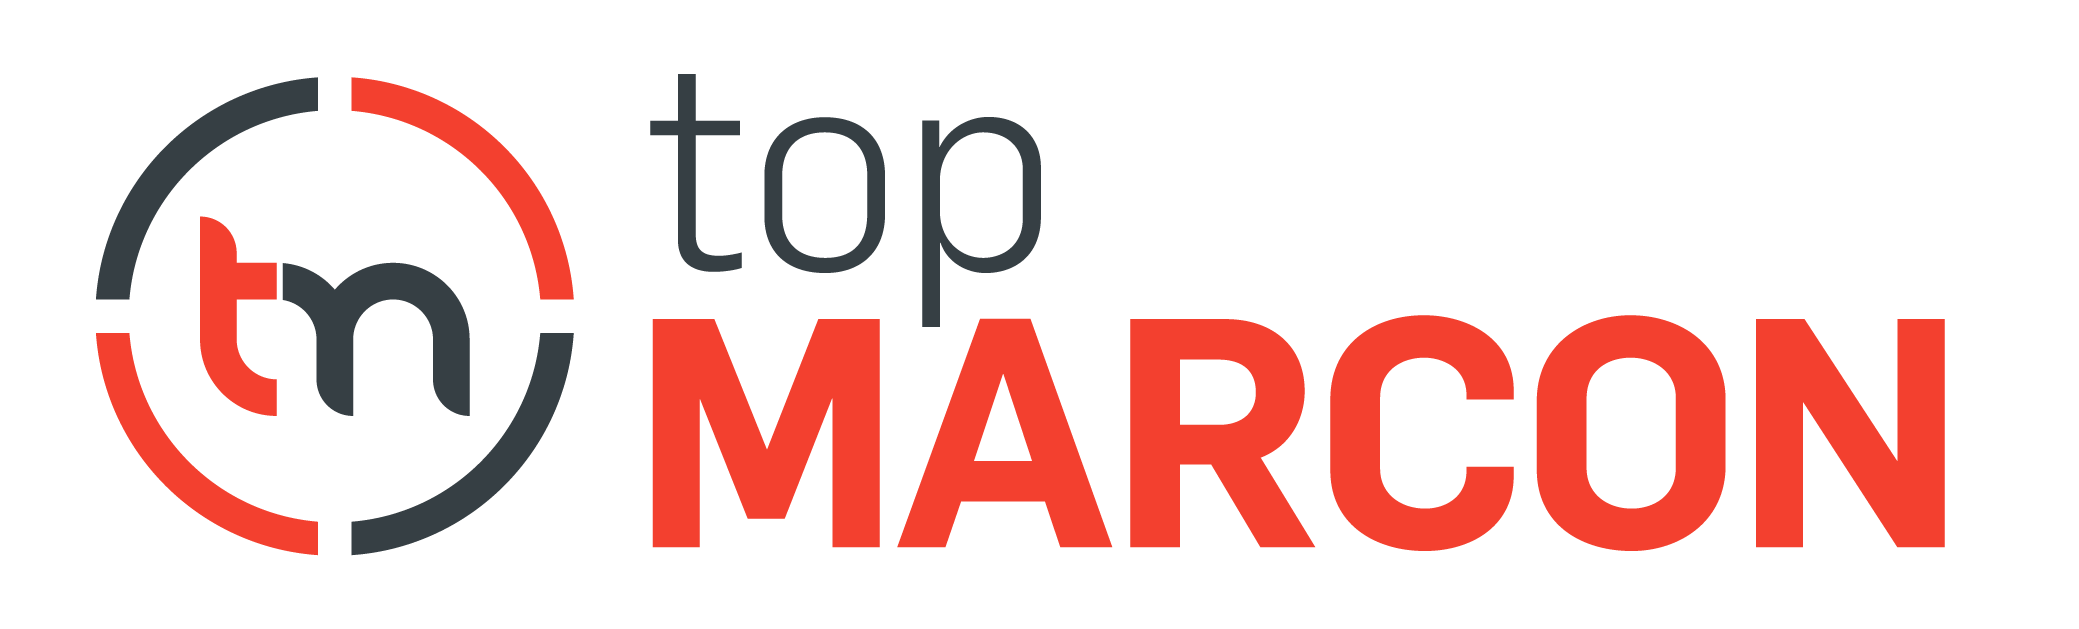 Top-MARCON-01